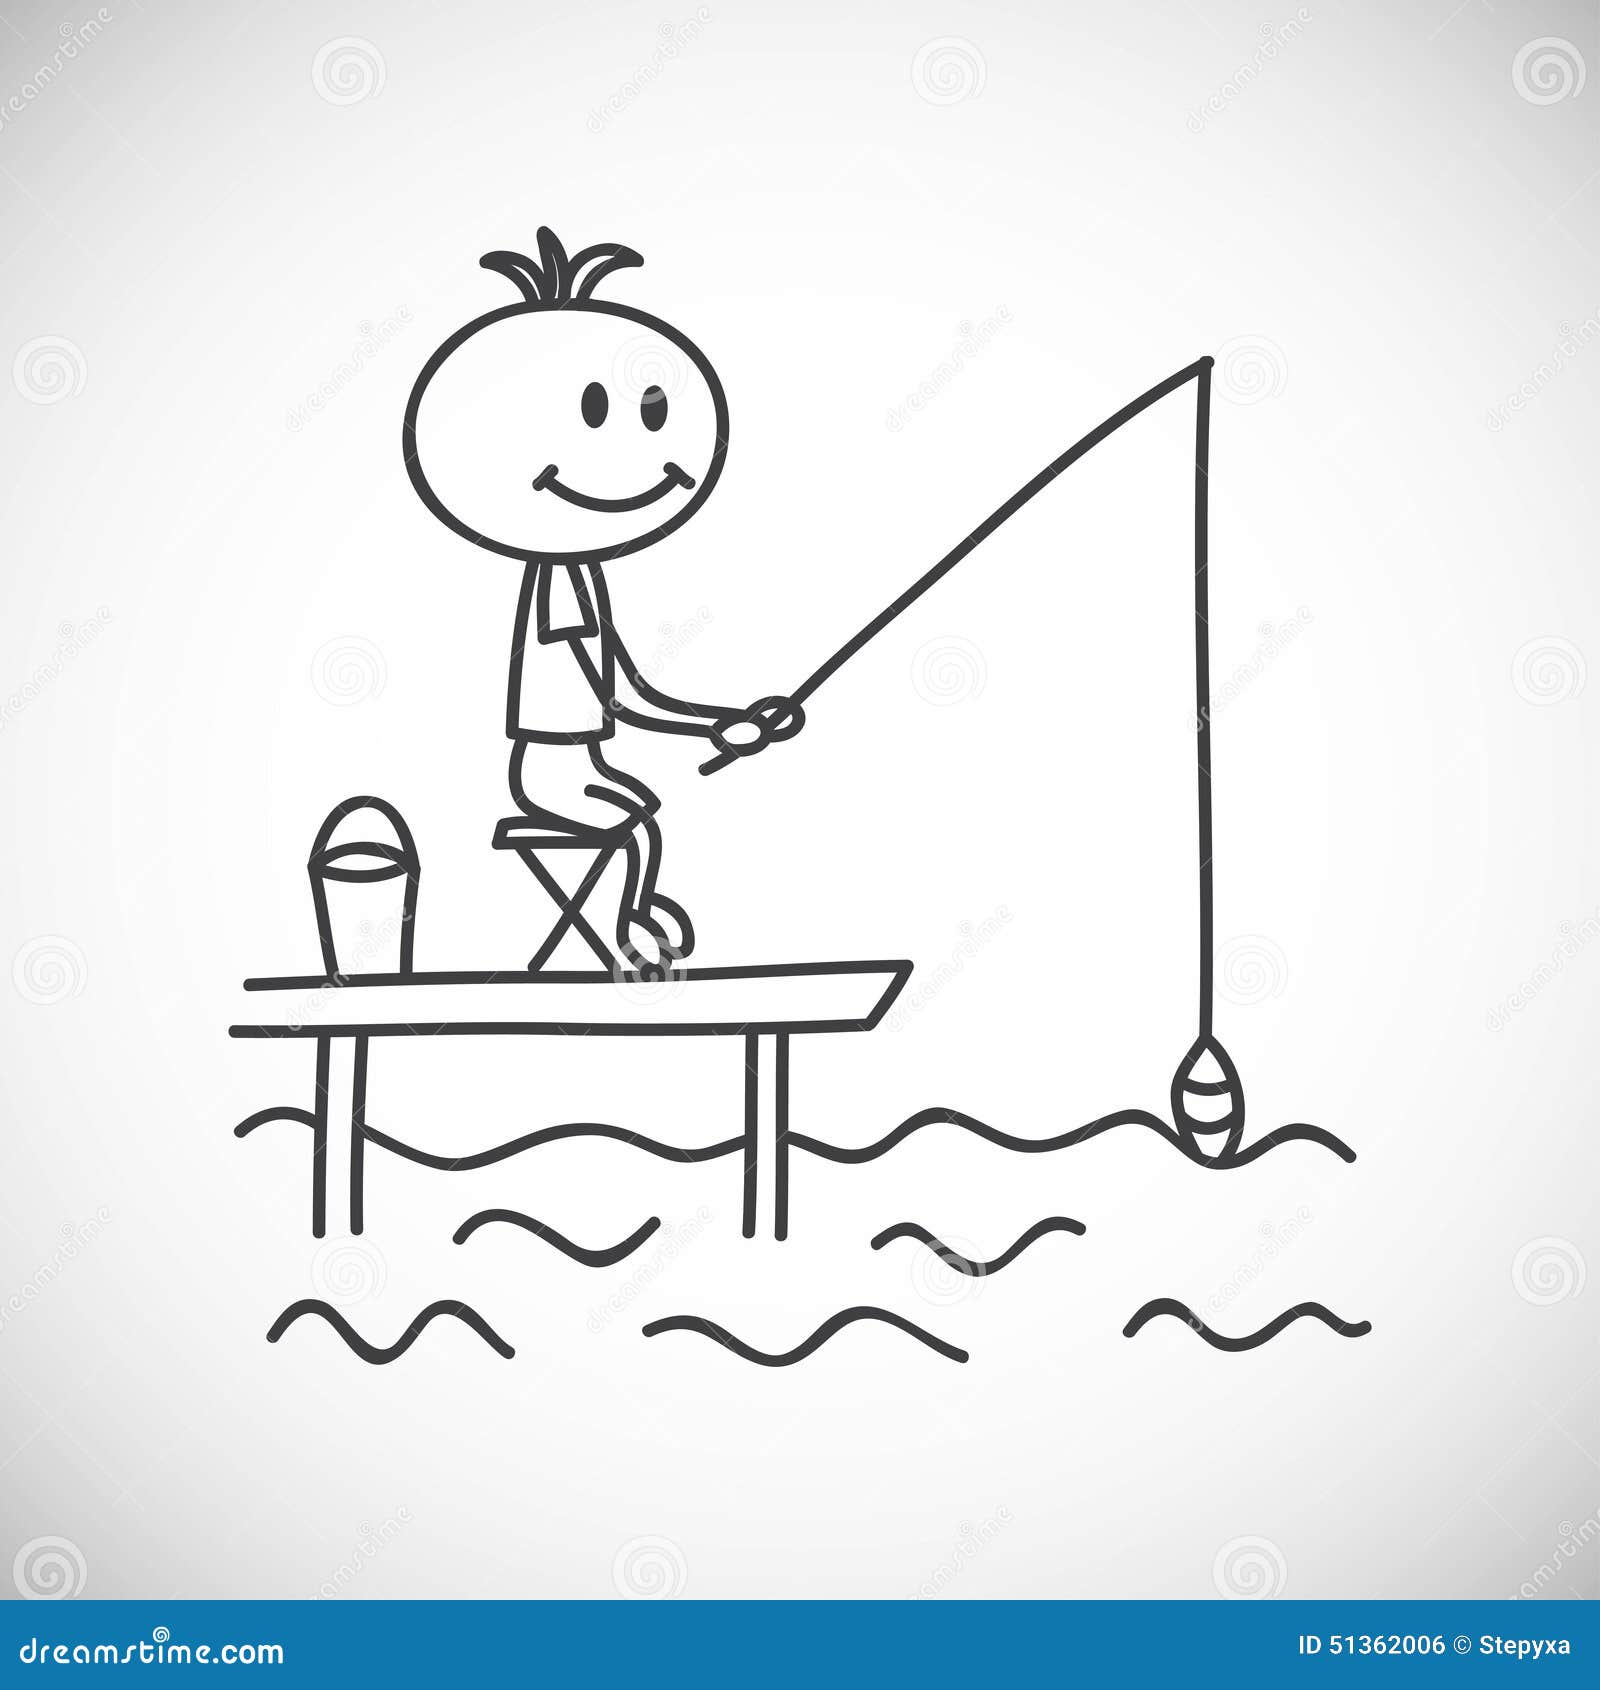 Boy stock illustration. Illustration of draw, fishing - 51362006